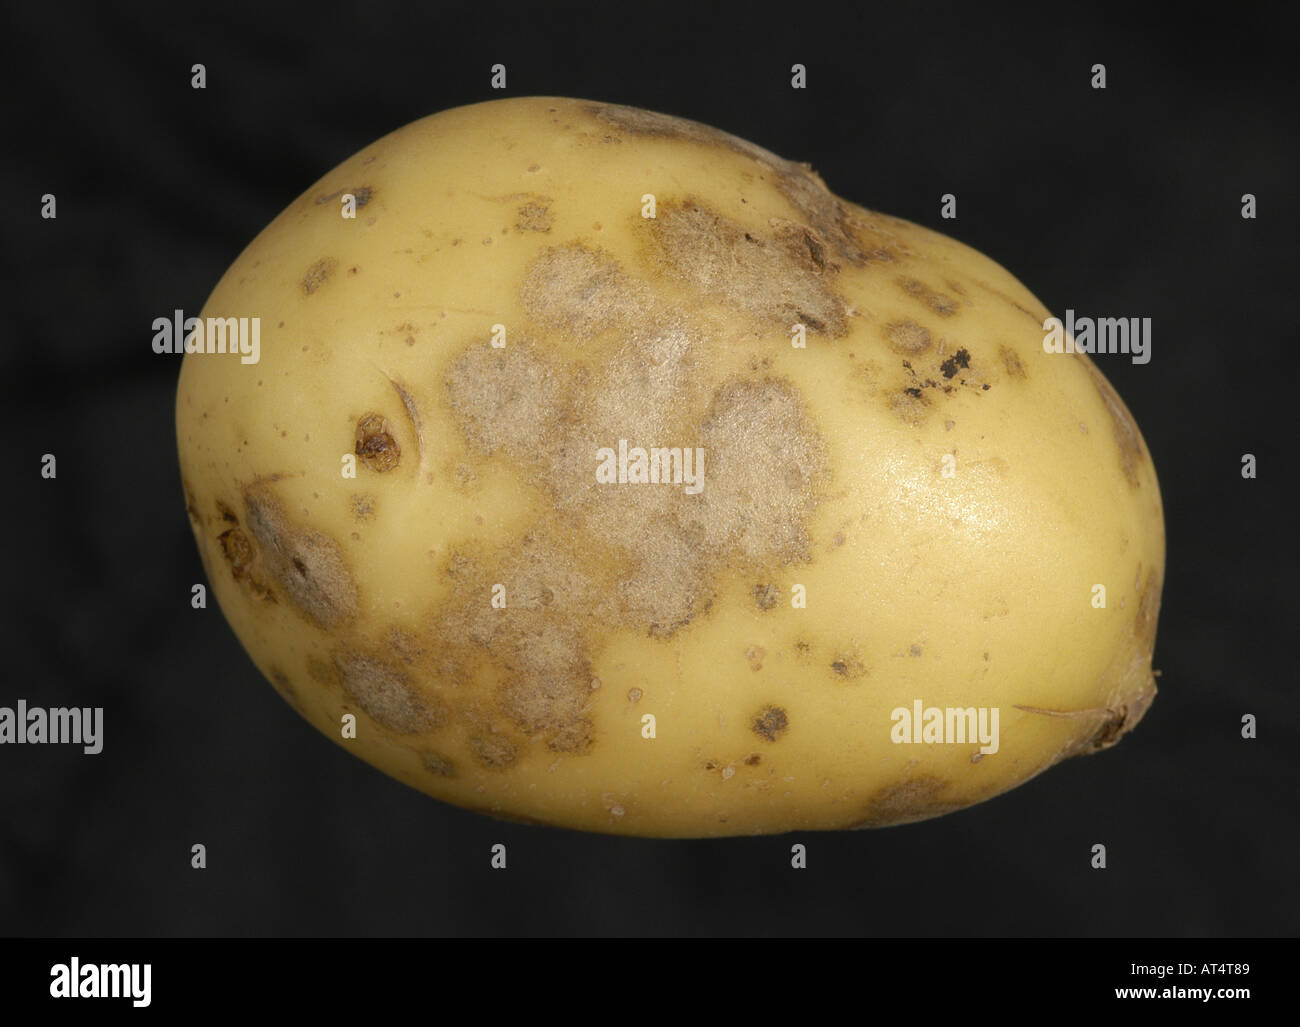 Silver scurf Helmintosporium solani infection evident on potato tuber Stock Photo